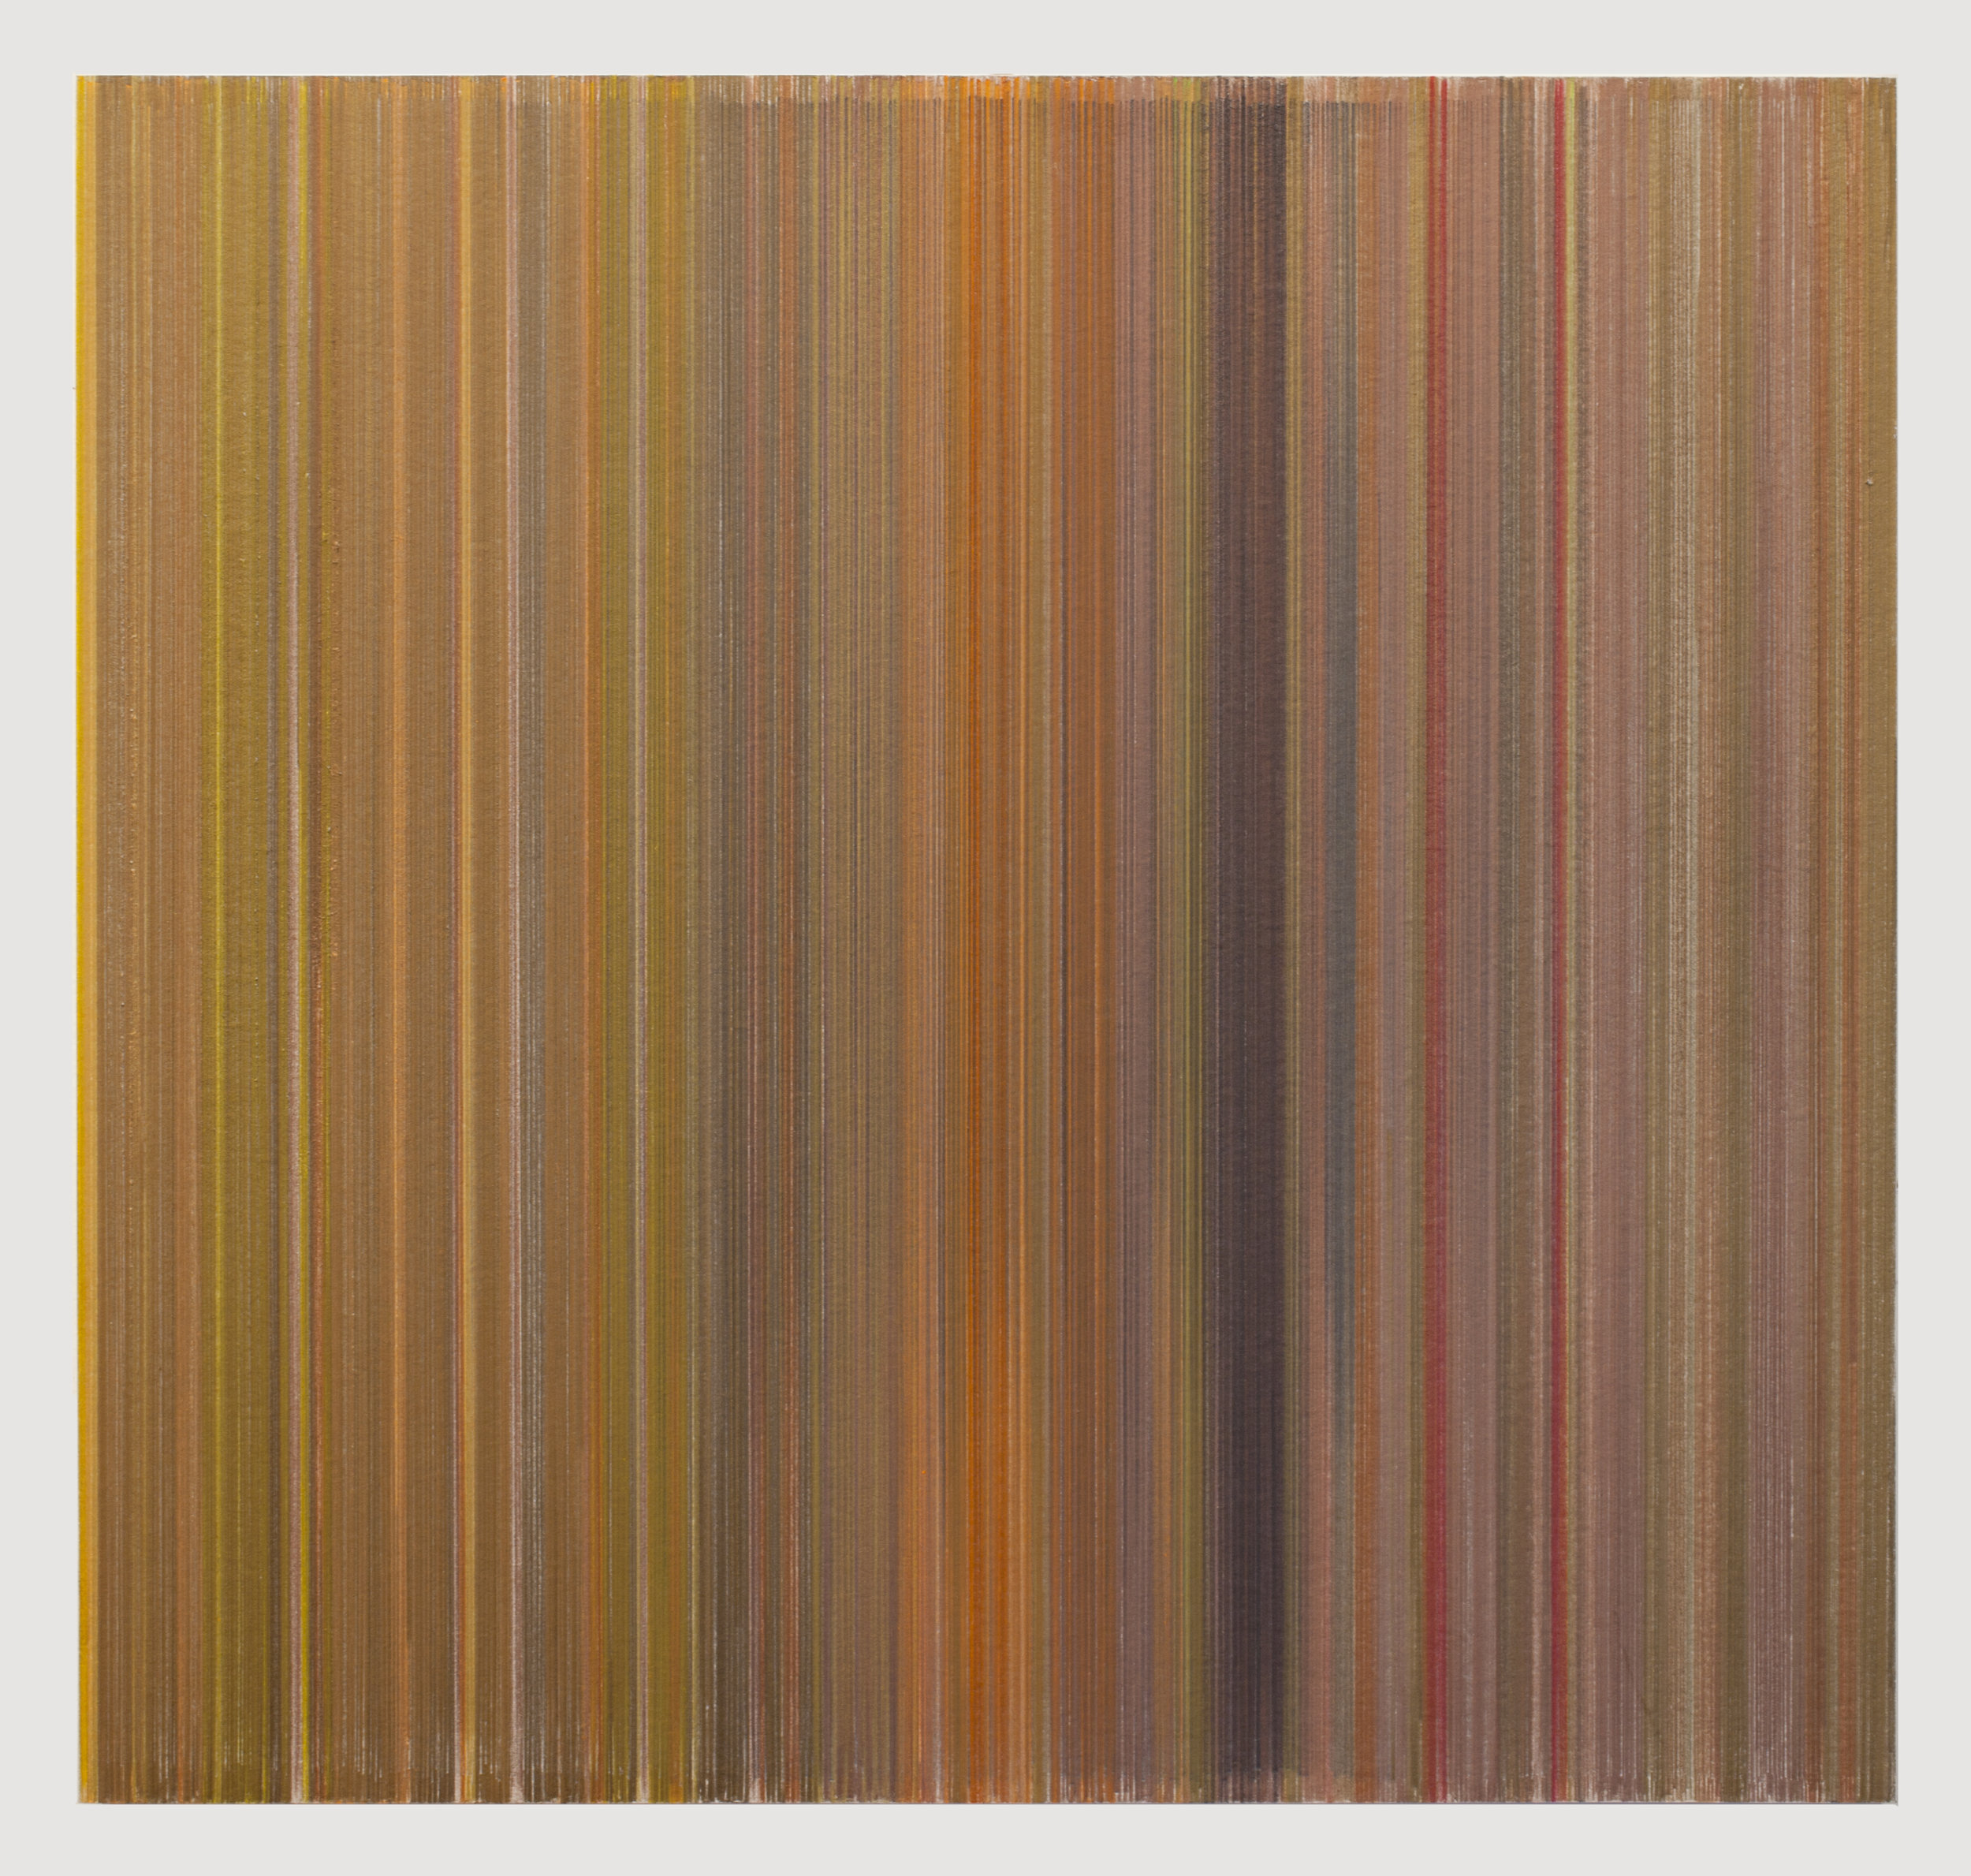    vertigo   2017 graphite and colored pencil on mat board 19 x 18 inches title from poem by Alice Oswald  Vertigo  from  Falling Awake , 2016, W.W. Norton &amp; Company 